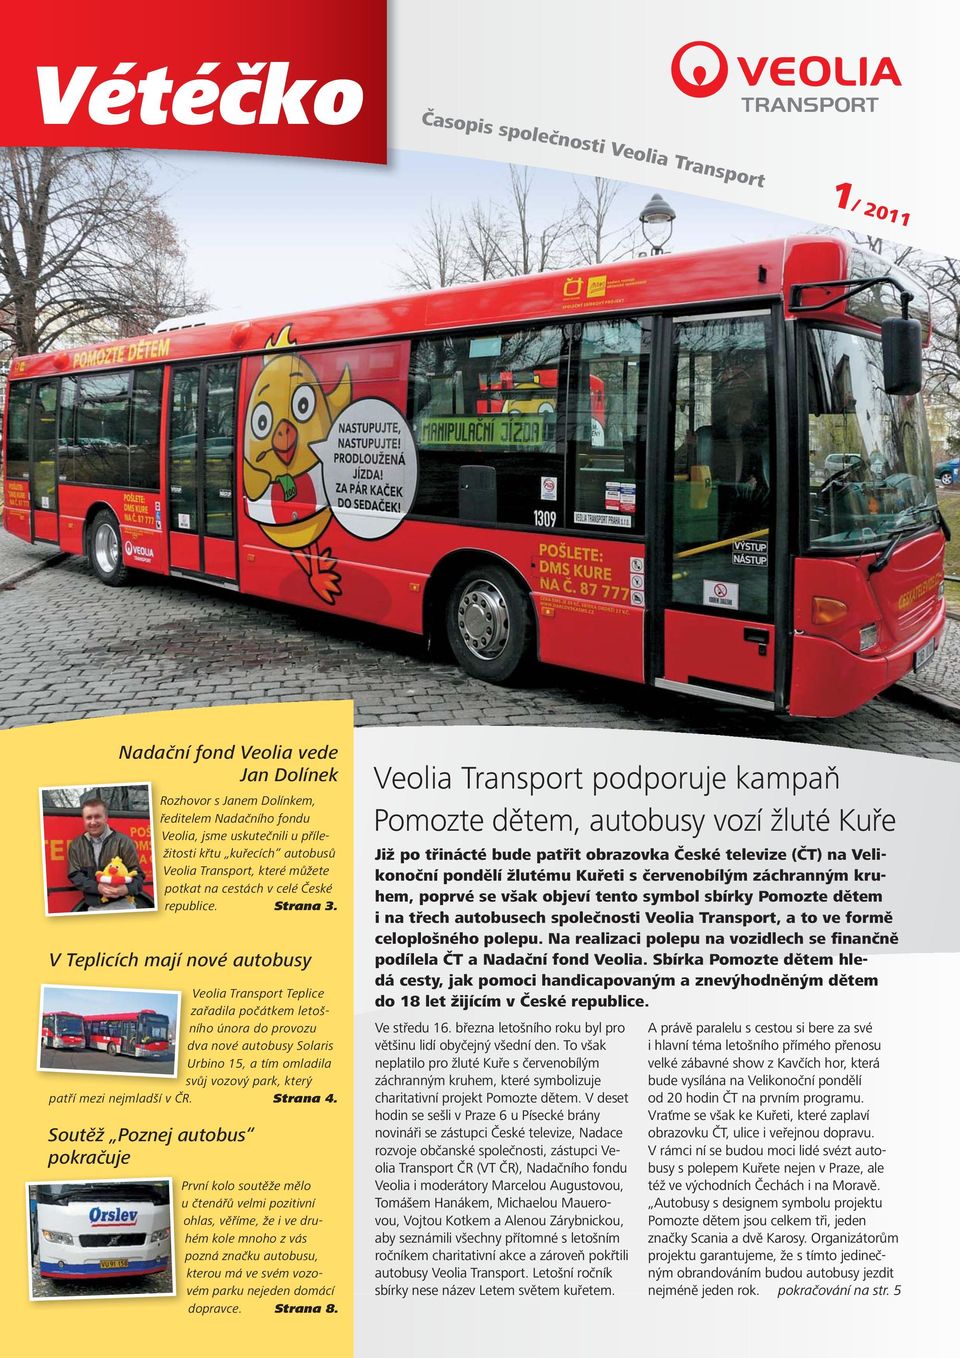 V Teplicích mají nové autobusy Veolia Transport Teplice zařadila počátkem letošního února do provozu dva nové autobusy Solaris Urbino 15, a tím omladila svůj vozový park, který patří mezi nejmladší v